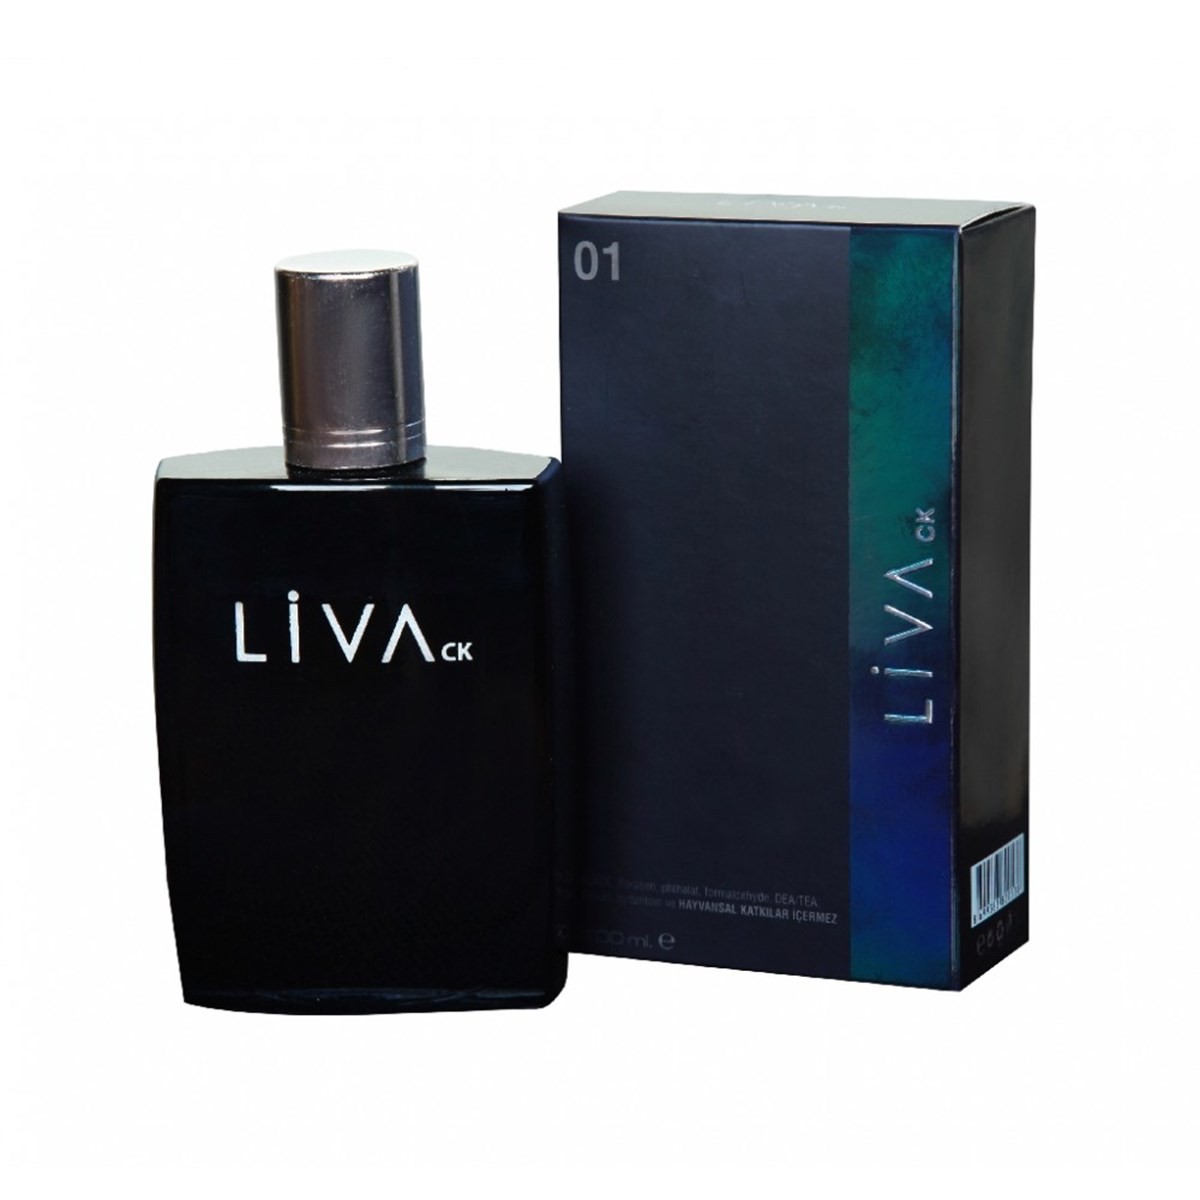 Liva - Alkolsüz Doğal Parfüm 01 Erkek